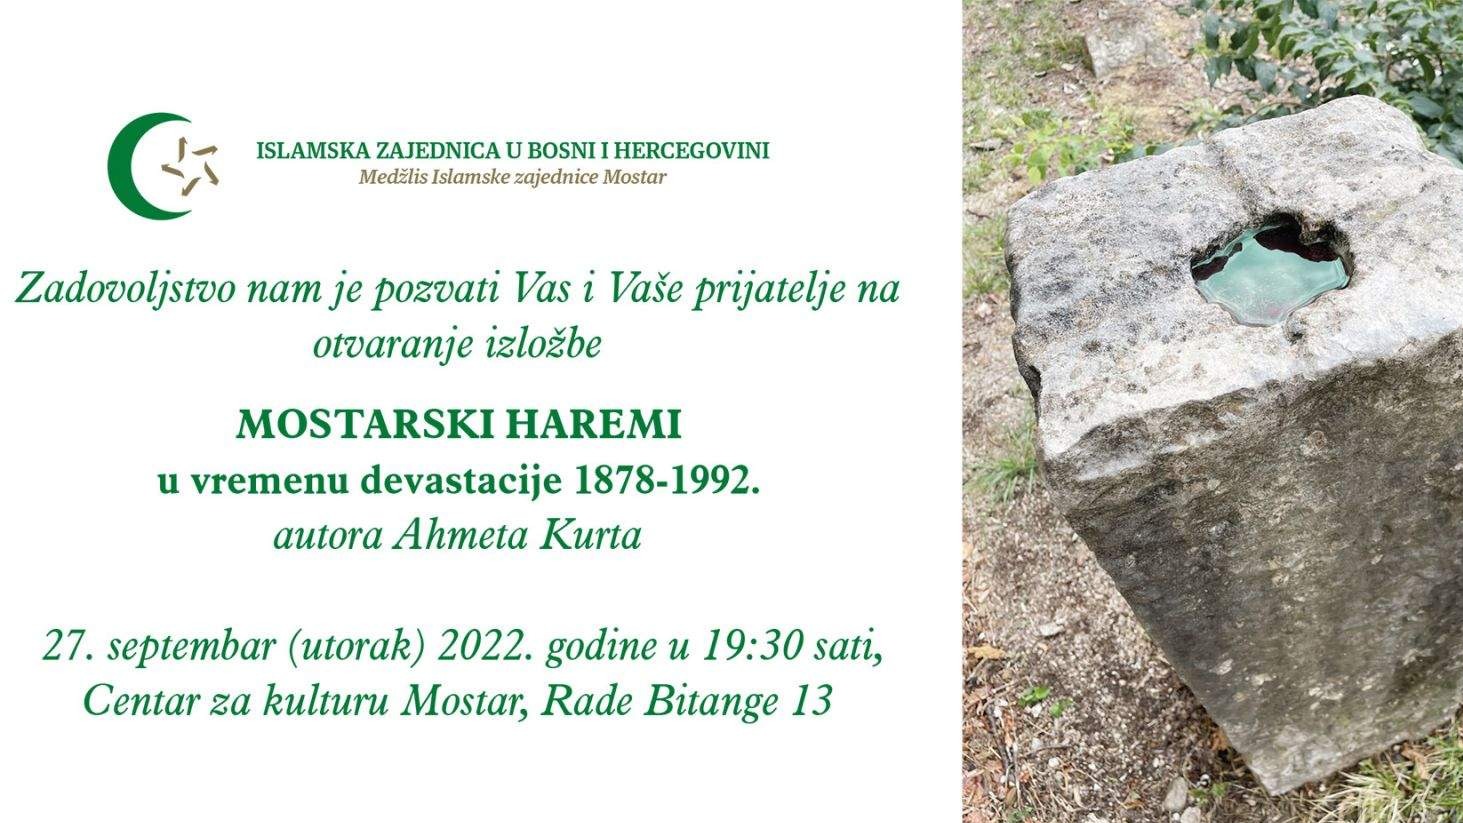 Izložba "Mostarski haremi u vremenu devastacije 1878-1992." 27. septembra